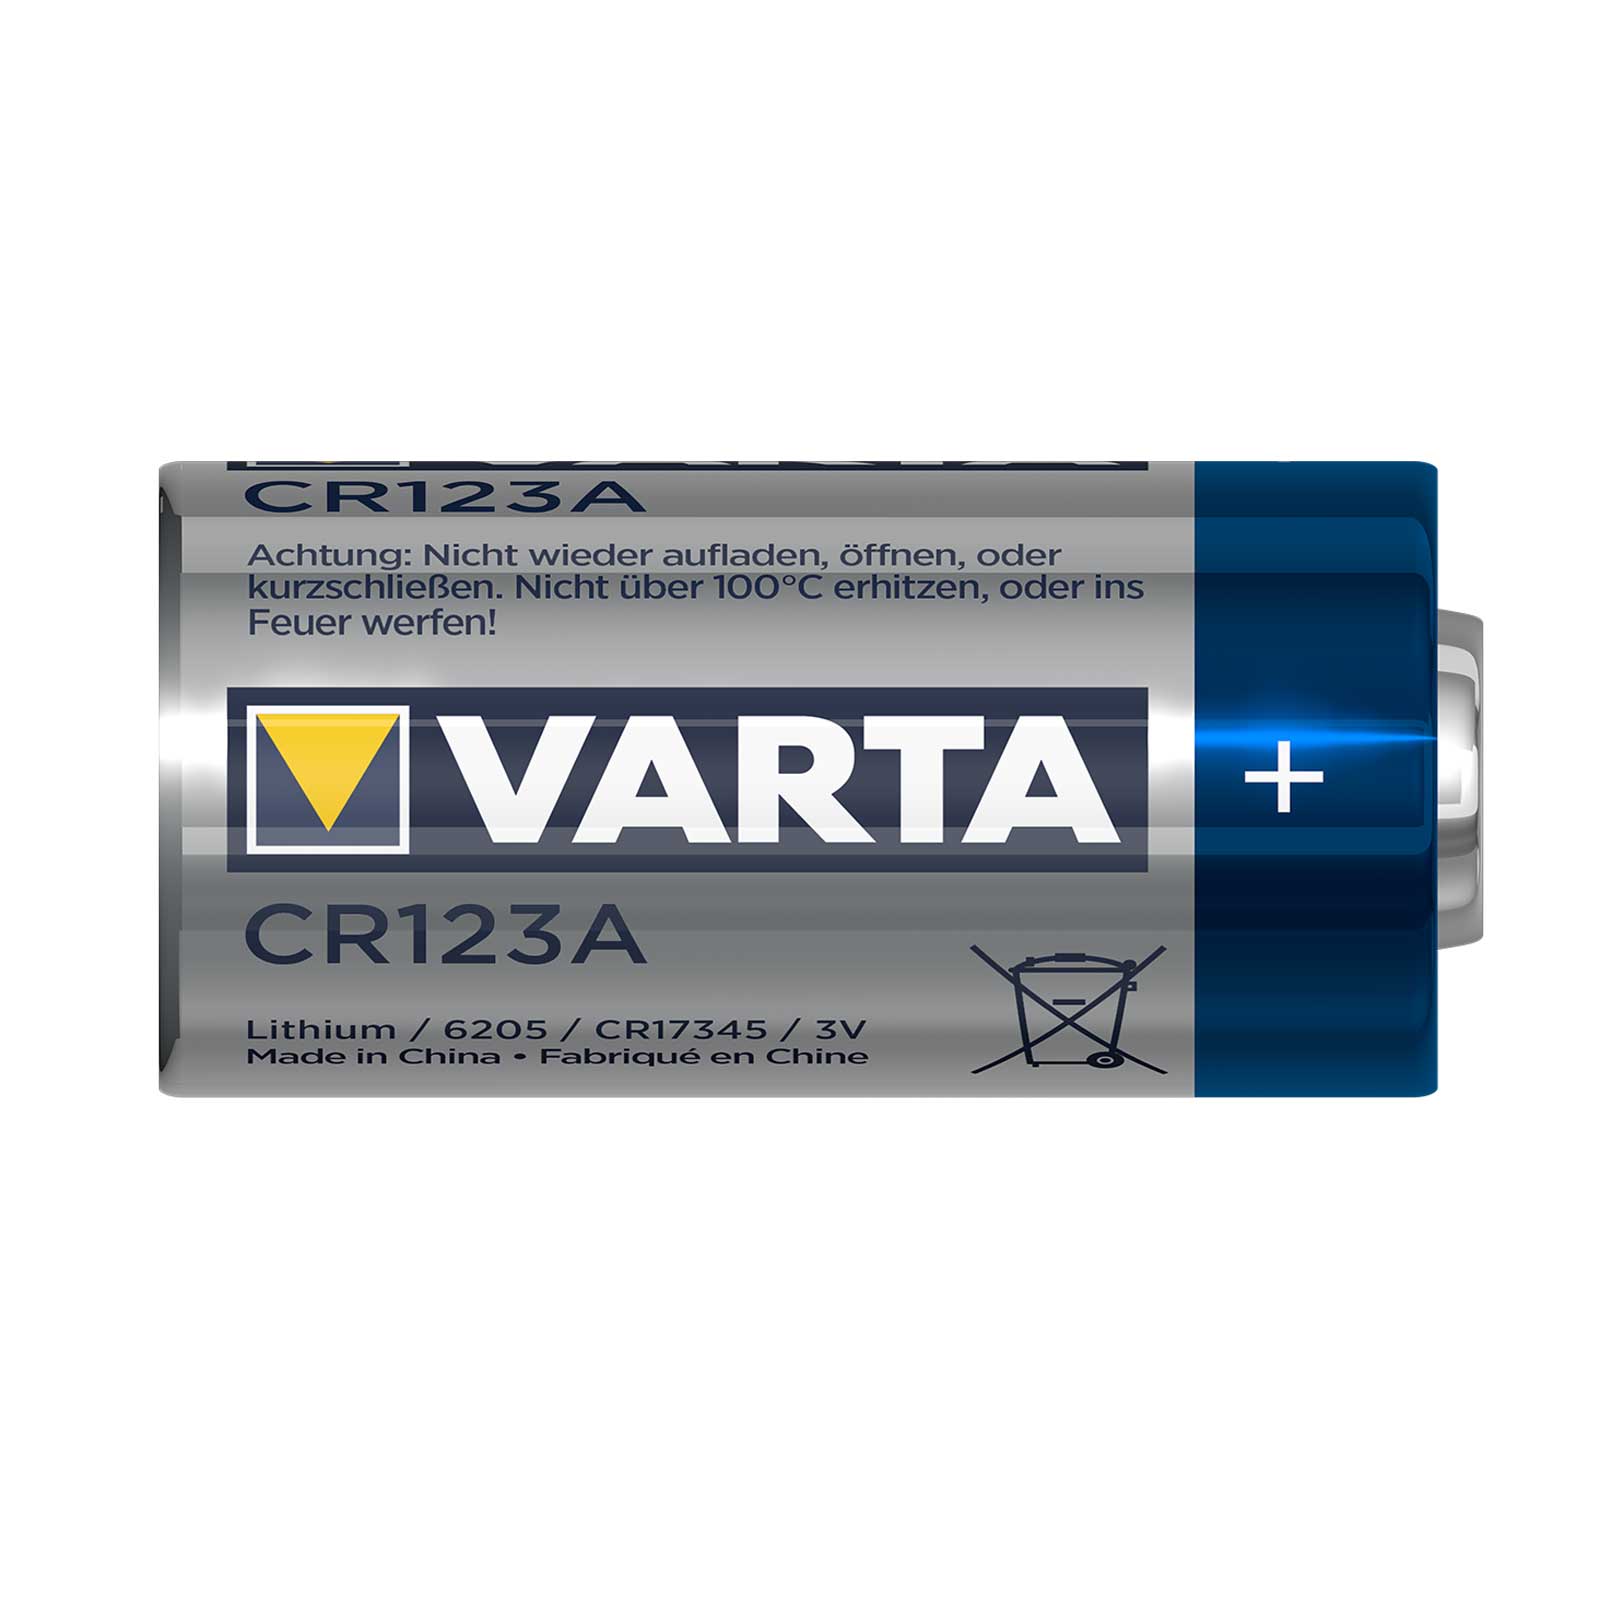 Varta Professional Lithium CR123A 3V Fotobatterie (2er Blister)  